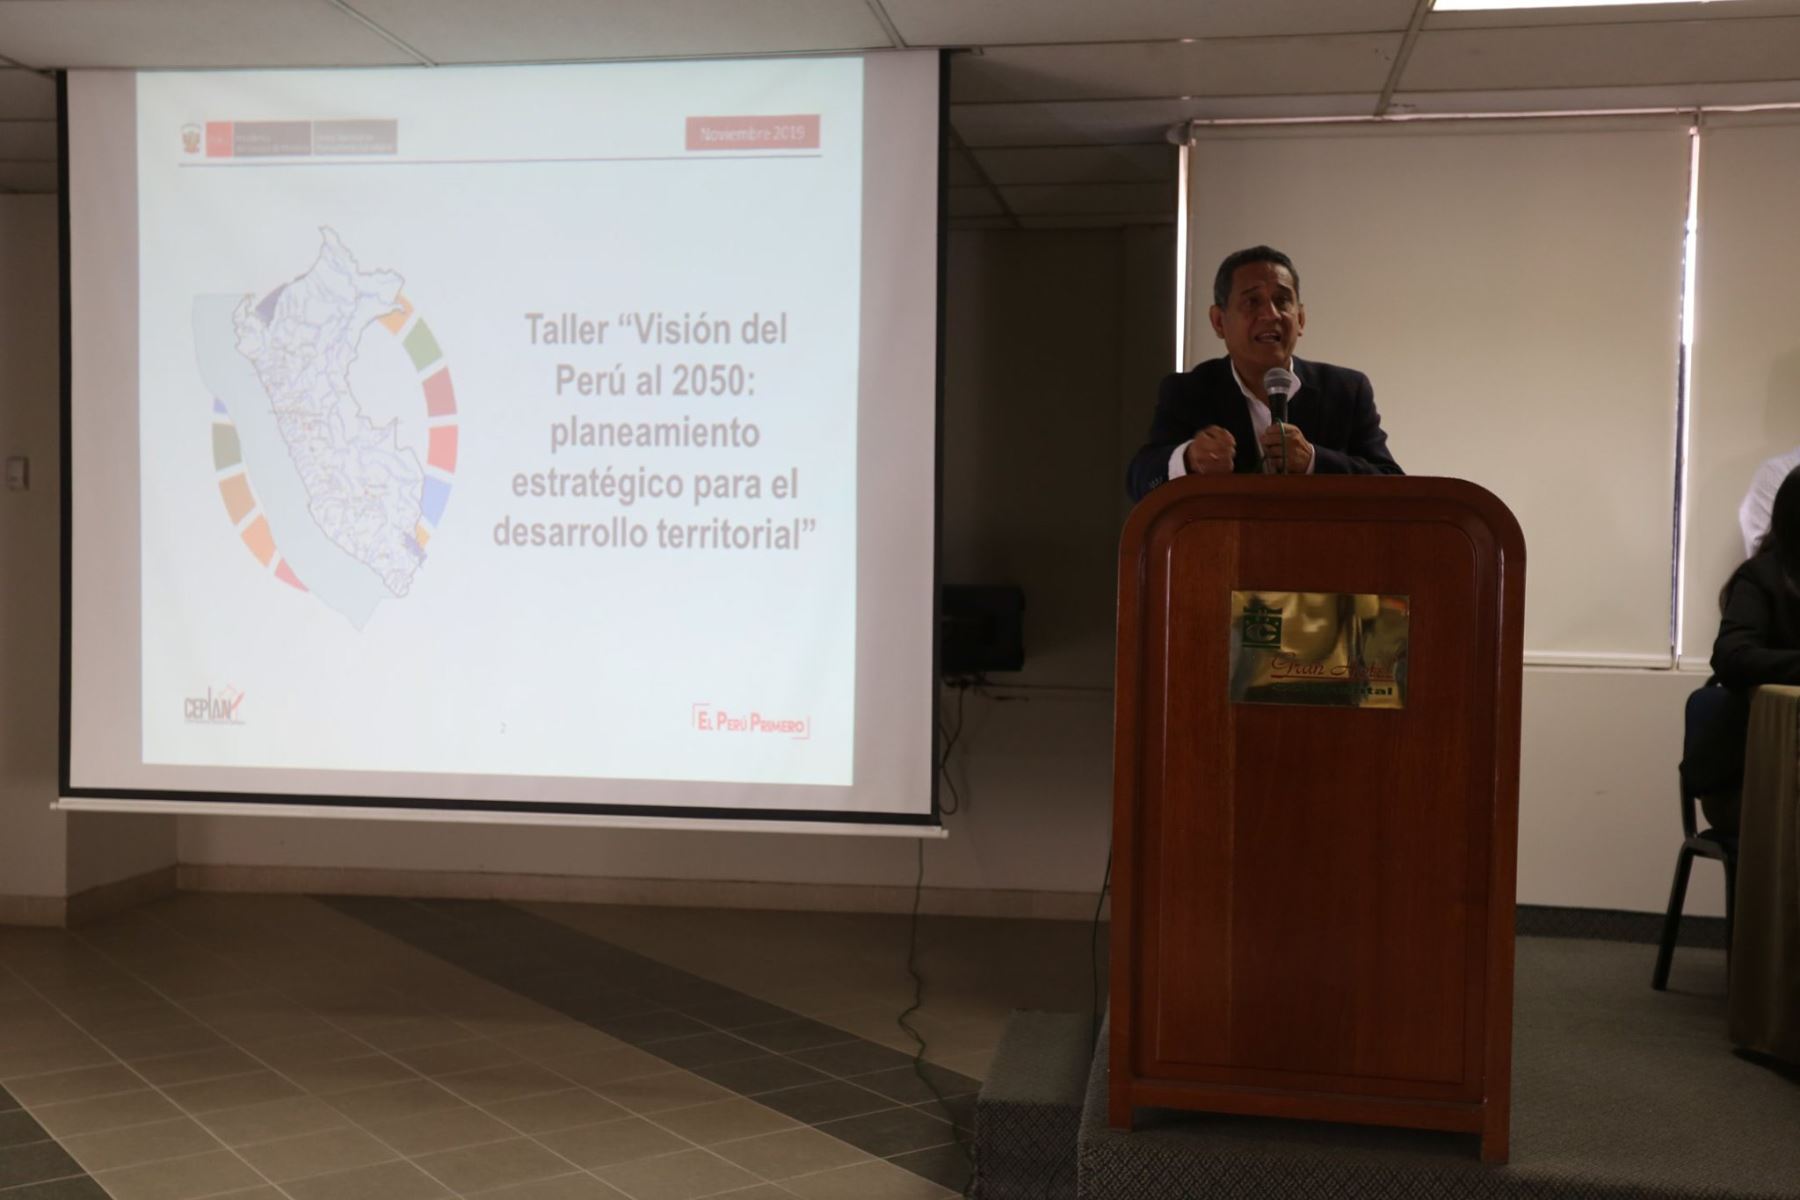 El gobernador regional de Cajamarca, Mesías Guevara, participó en el taller “Visión del Perú al 2050: Planeamiento estratégico para el desarrollo territorial”.